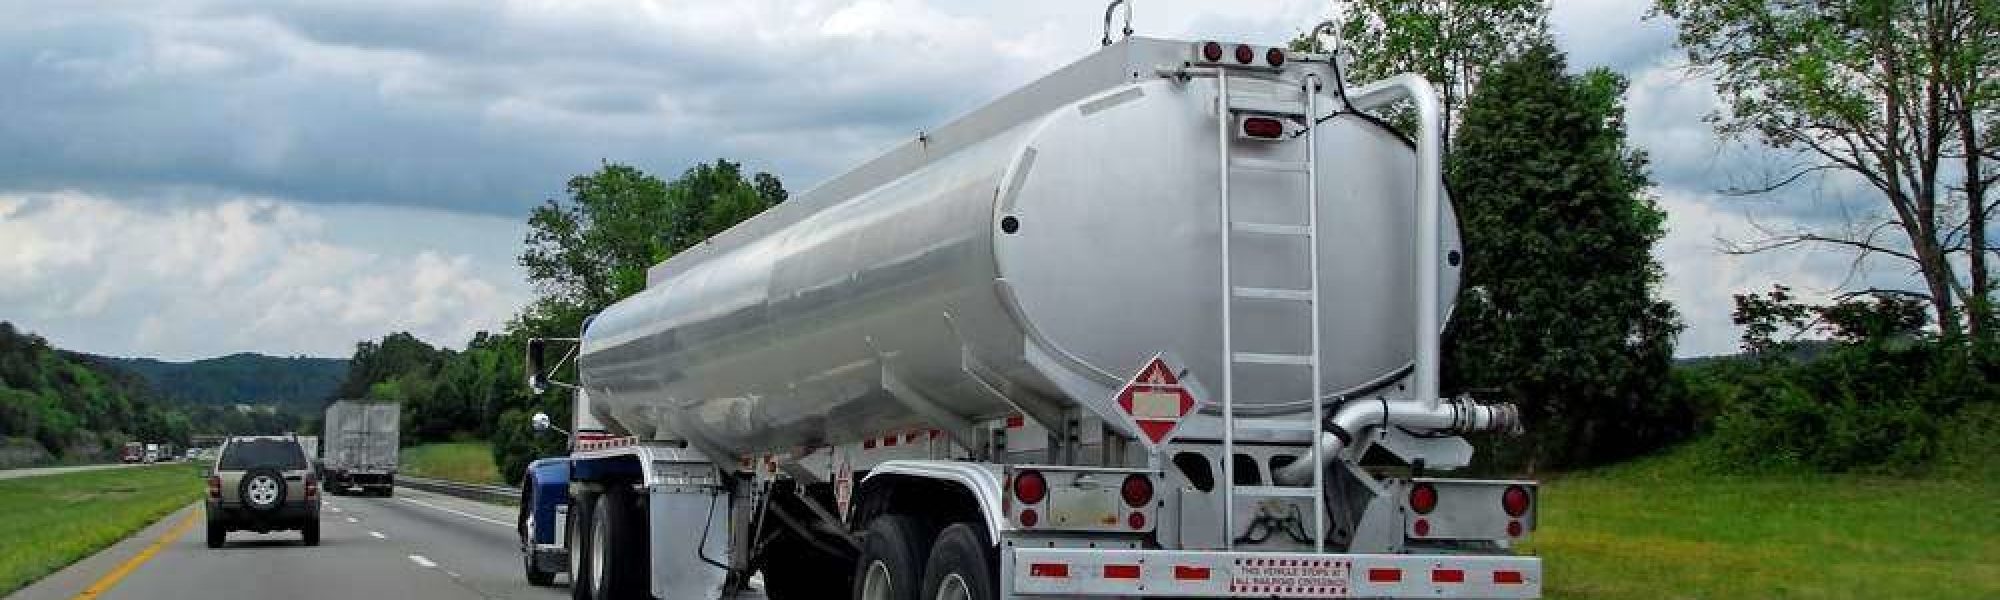 Heating fuel haulers get HOS relief in Wisconsin